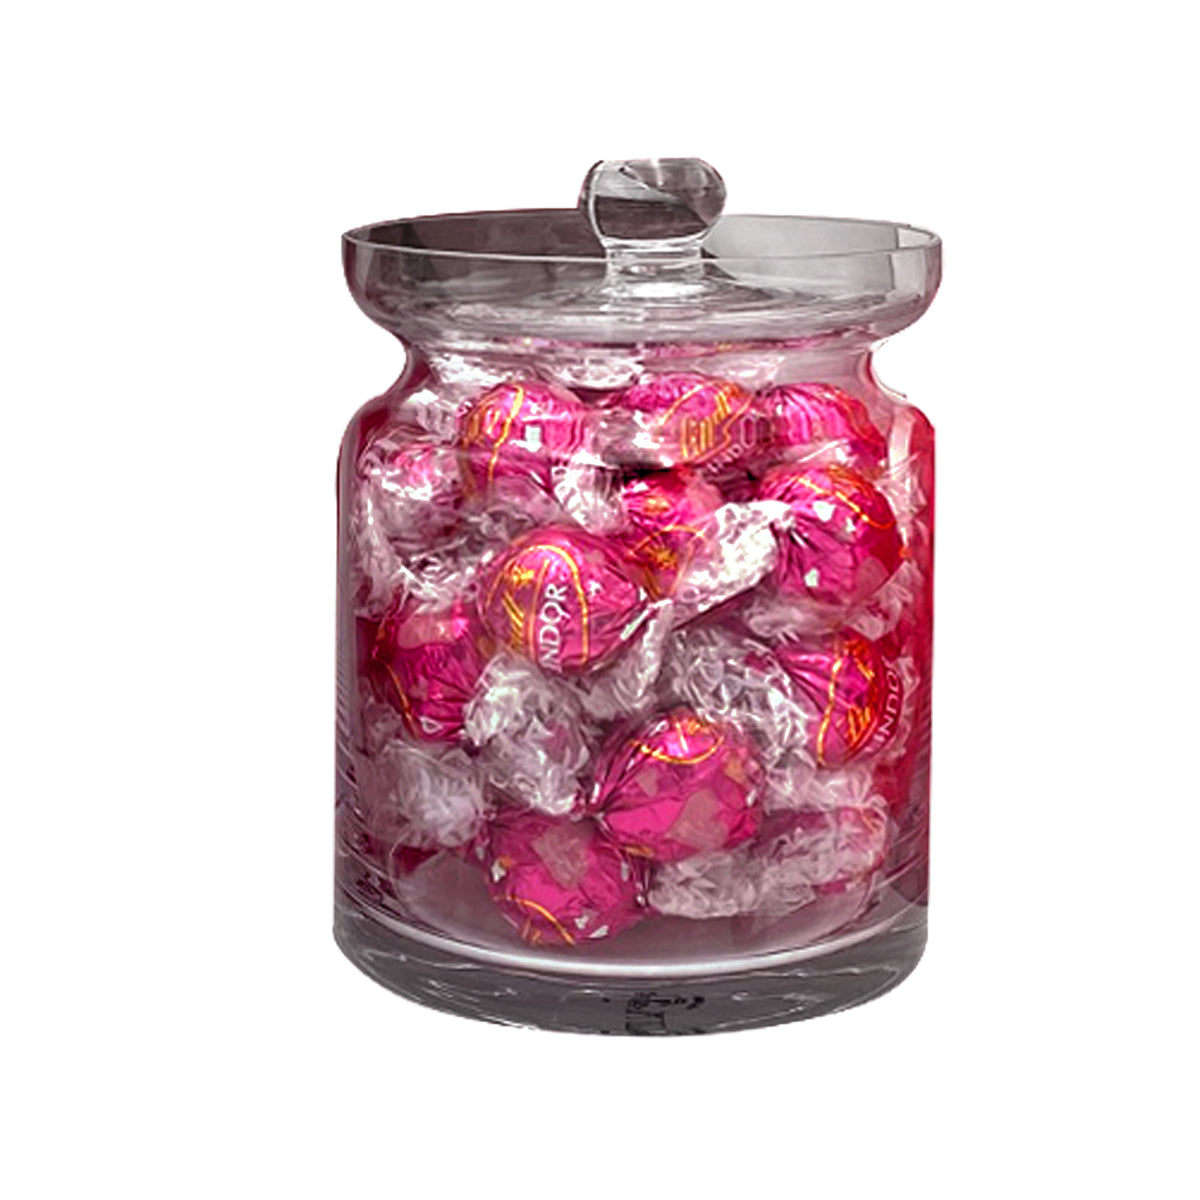 Crystal Candy or Cookie Jar